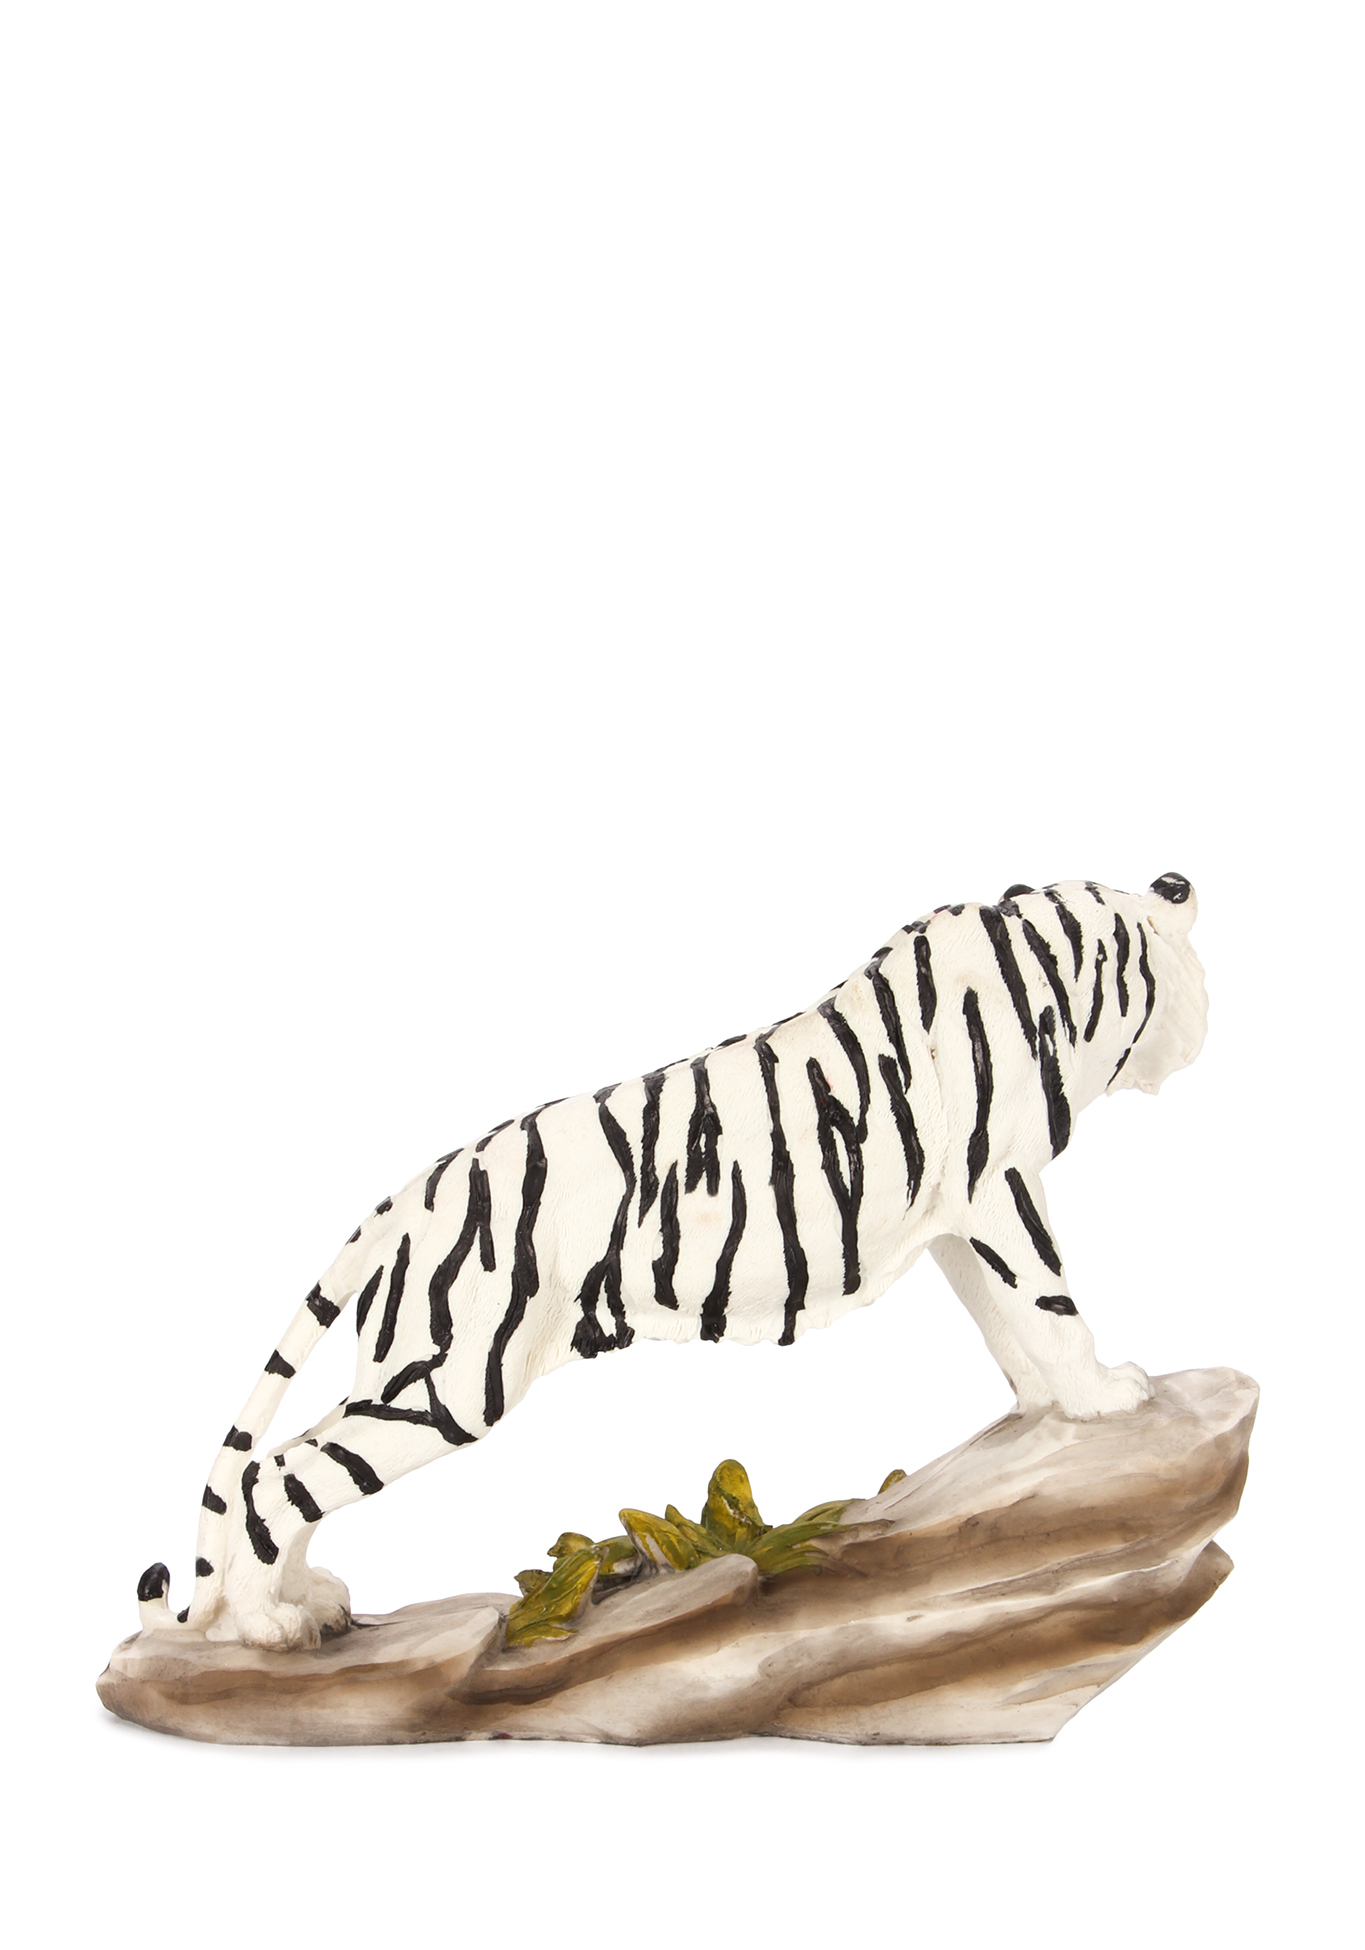 Оберег интерьерный "Тигр" Lefard, цвет стойка бенгальского тигра, размер 20,5*7*15 см - фото 5